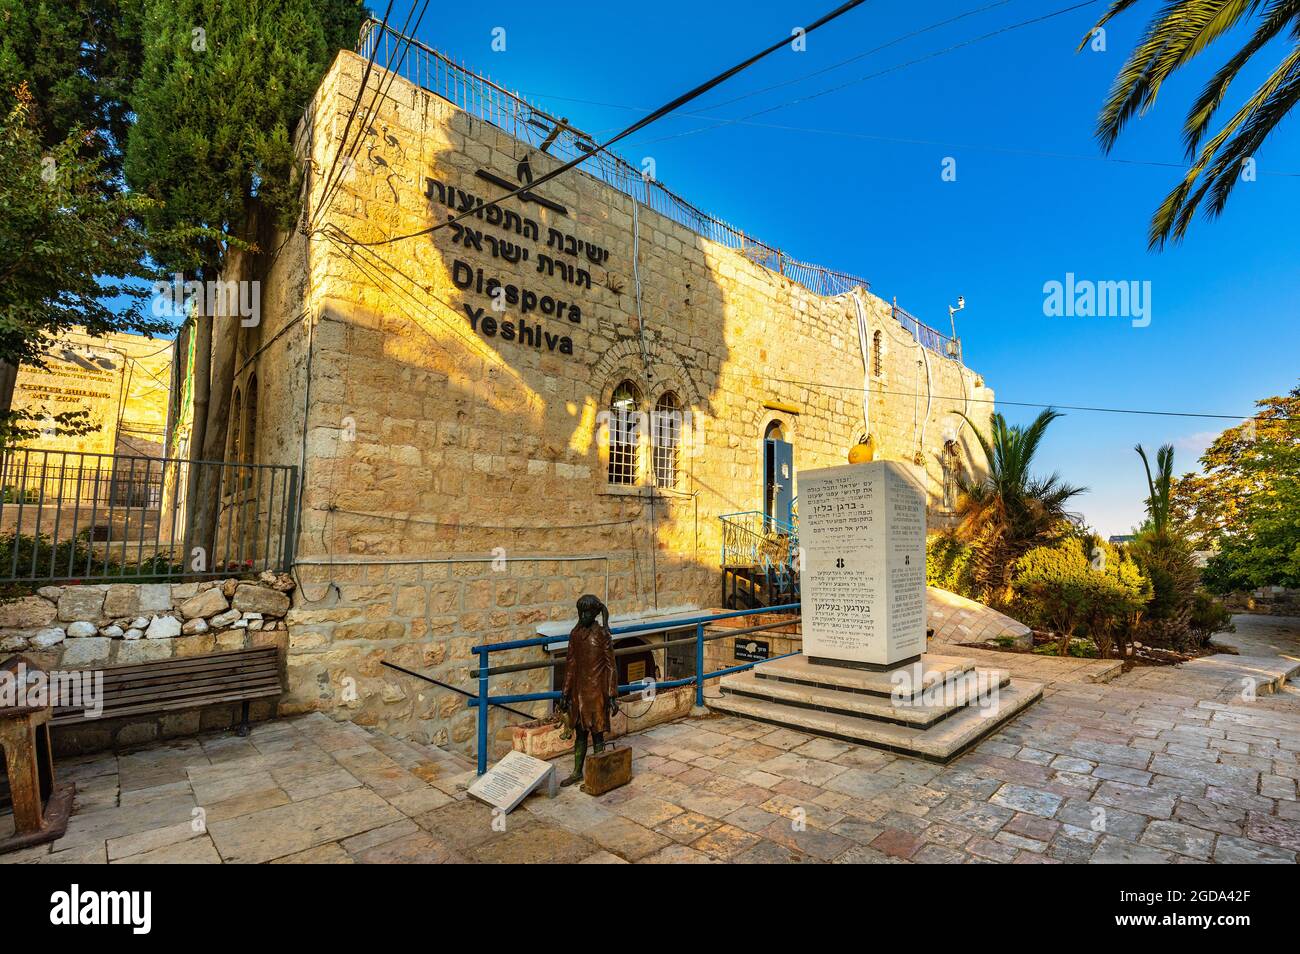 Jerusalén, Israel - 13 de octubre de 2017: La diáspora Yeshiva, una institución educativa judía aparte de la Abadía de Dormición en el Monte Zion, cerca de la Puerta de Zion, en el muro exterior Foto de stock